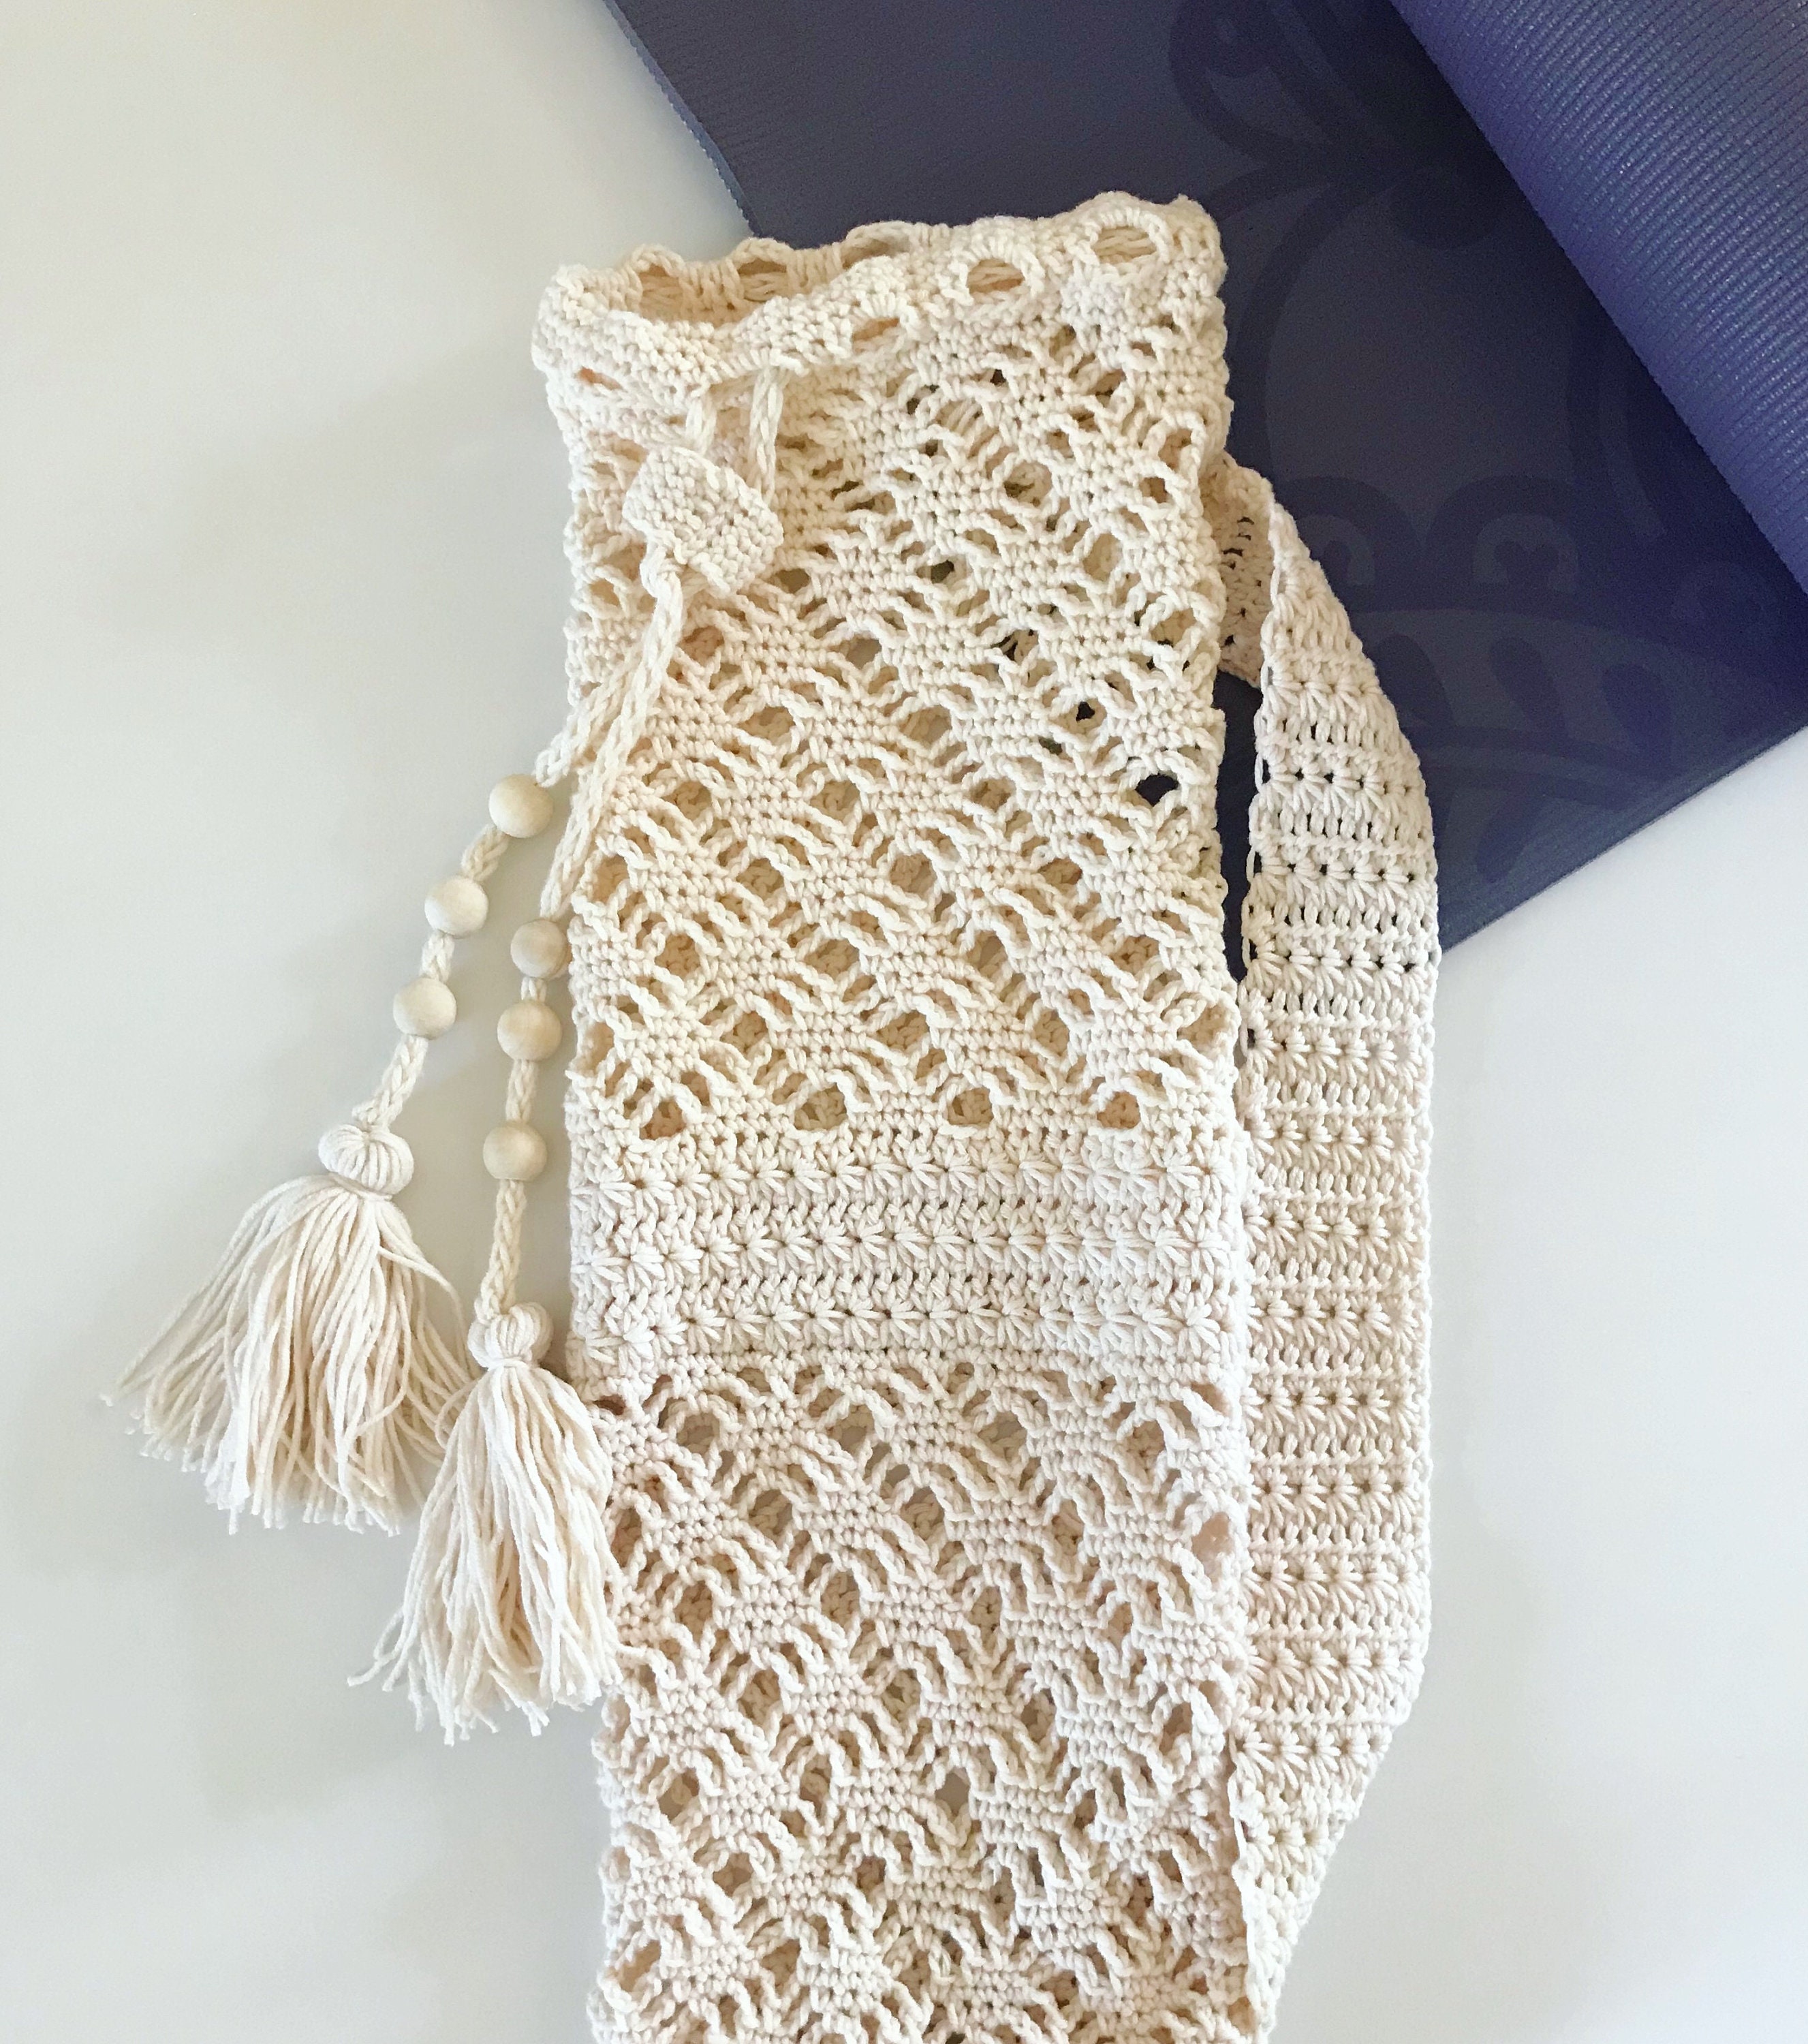 Ocean's Breath Yoga Bag Crochet Pattern -  Canada